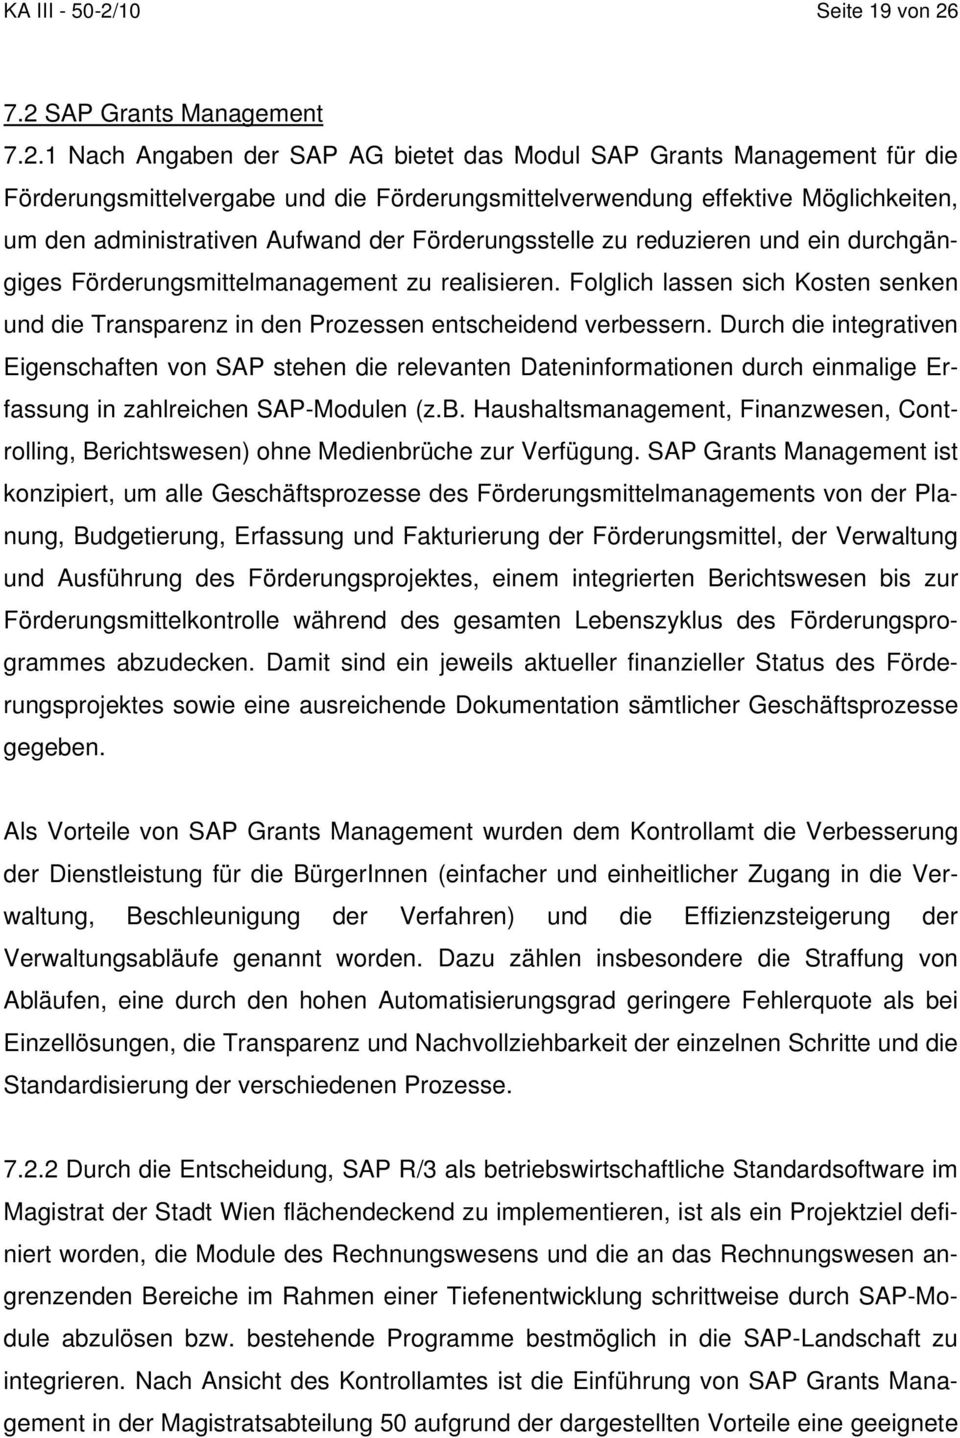 7.2 SAP Grants Management 7.2.1 Nach Angaben der SAP AG bietet das Modul SAP Grants Management für die Förderungsmittelvergabe und die Förderungsmittelverwendung effektive Möglichkeiten, um den